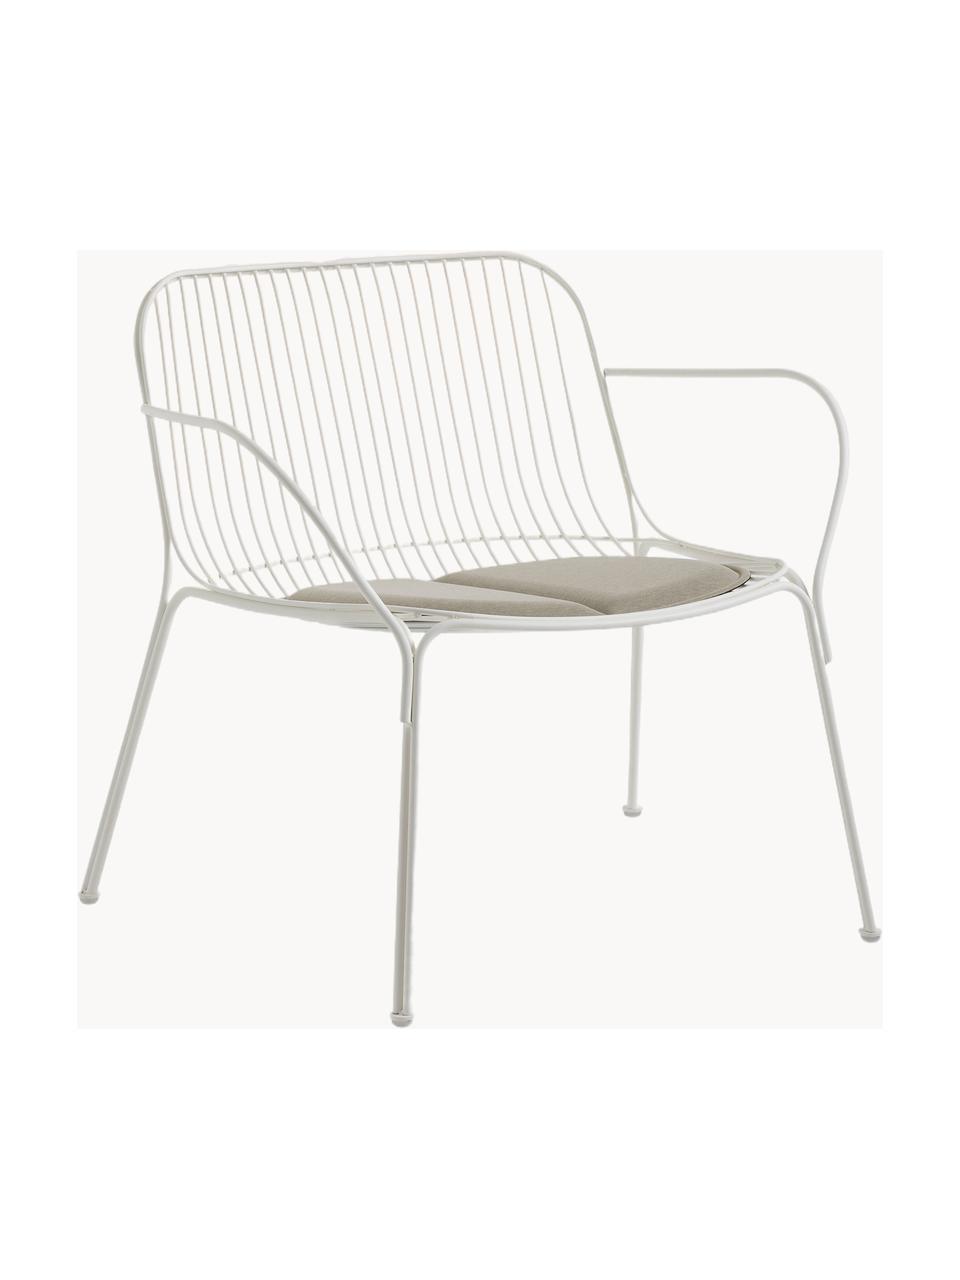 Cuscino sedia da esterno Hiray, Rivestimento: 50% poliacrilico, 45% pol, Beige chiaro, Larg. 43 x Lung. 47 cm